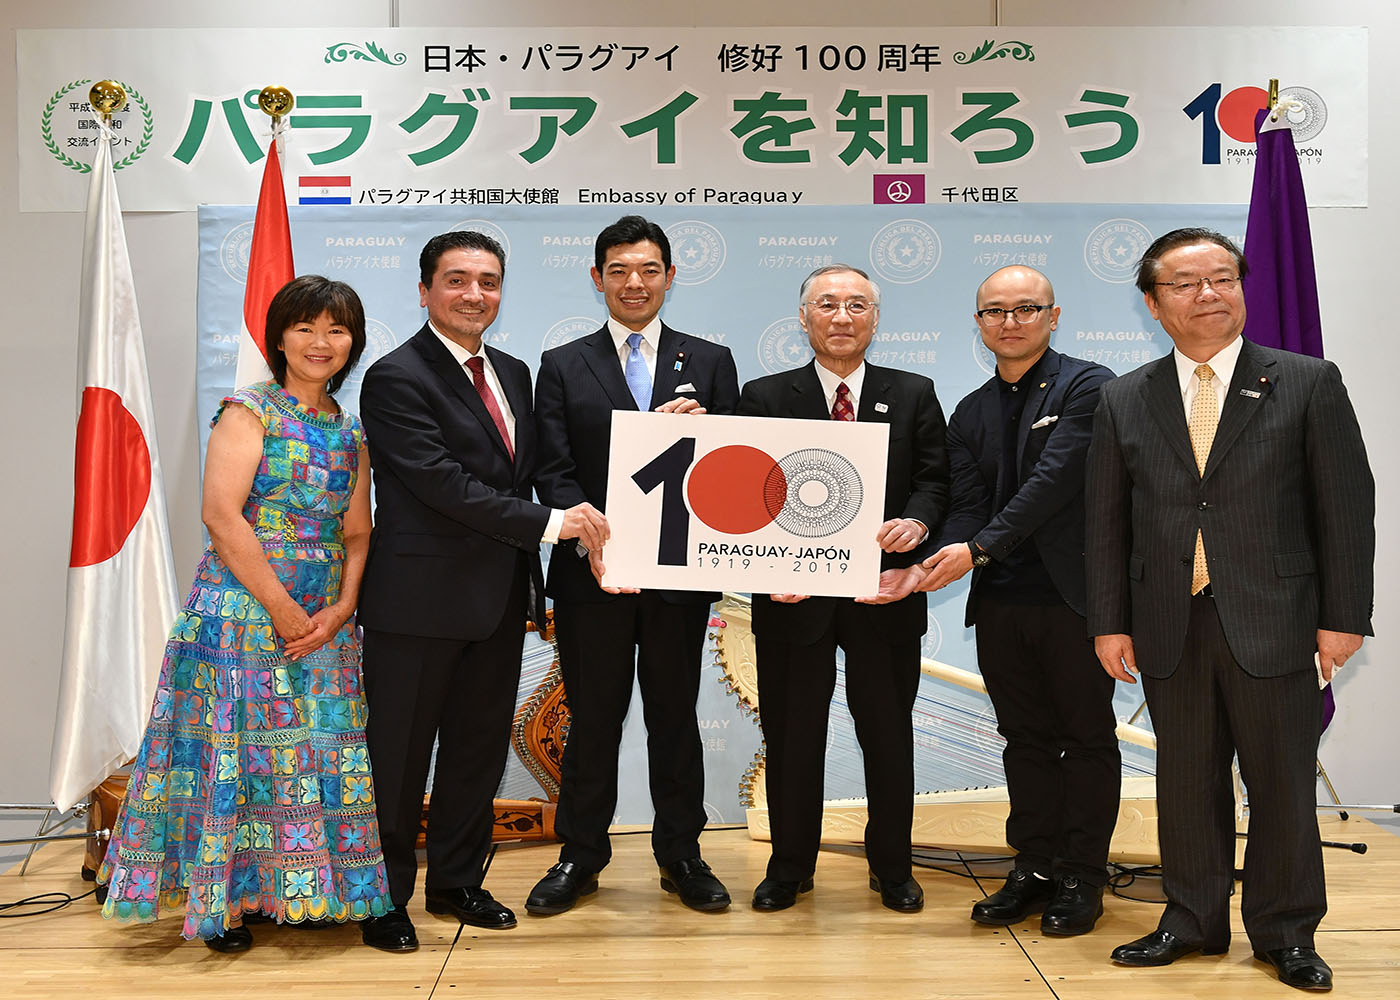 La Embajada del Paraguay en Japón realizó el lanzamiento de las celebraciones por los 100 años de relaciones diplomáticas